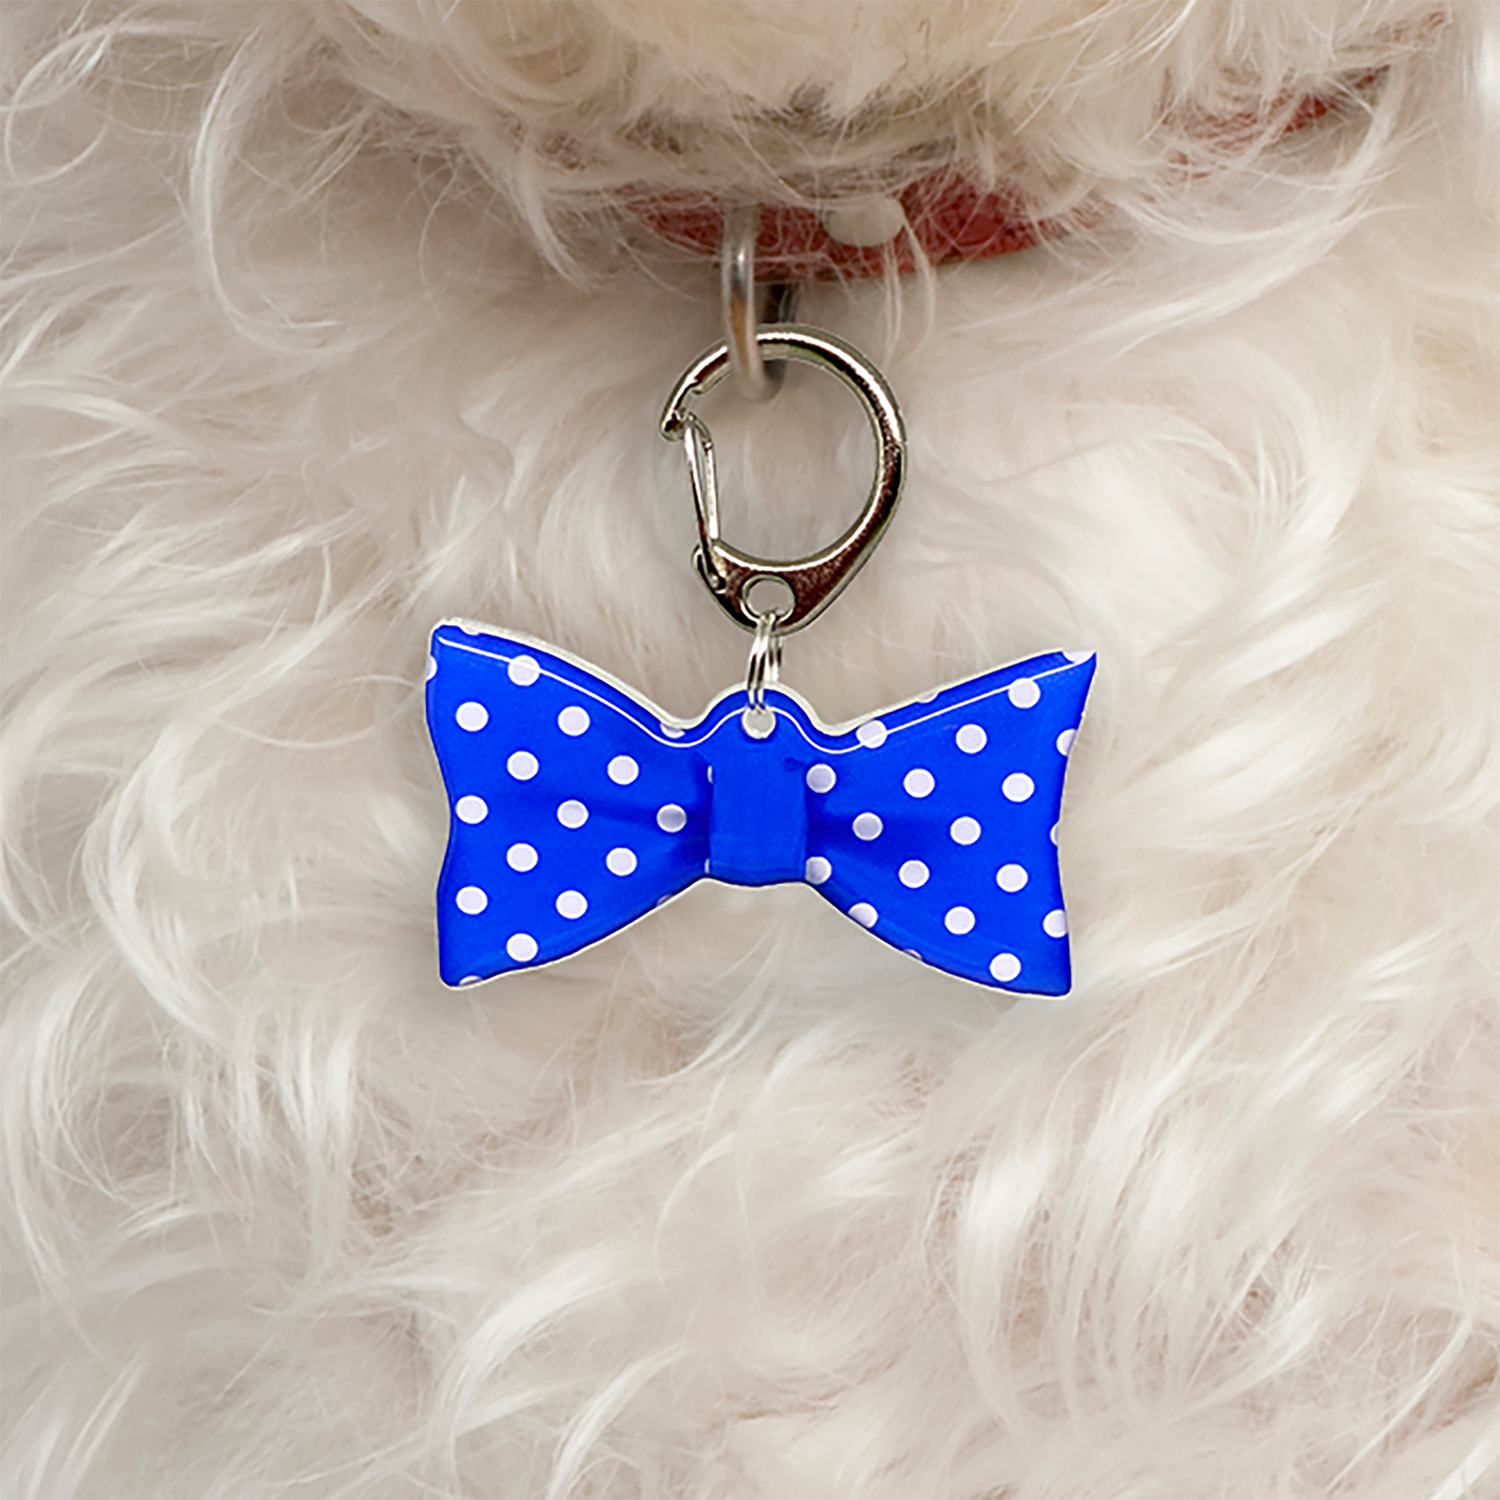 Liberty Blue Big Polka Dots Bowtie Pet ID Tag Dog Tag | Custom Pet ID Tags by Bashtags®